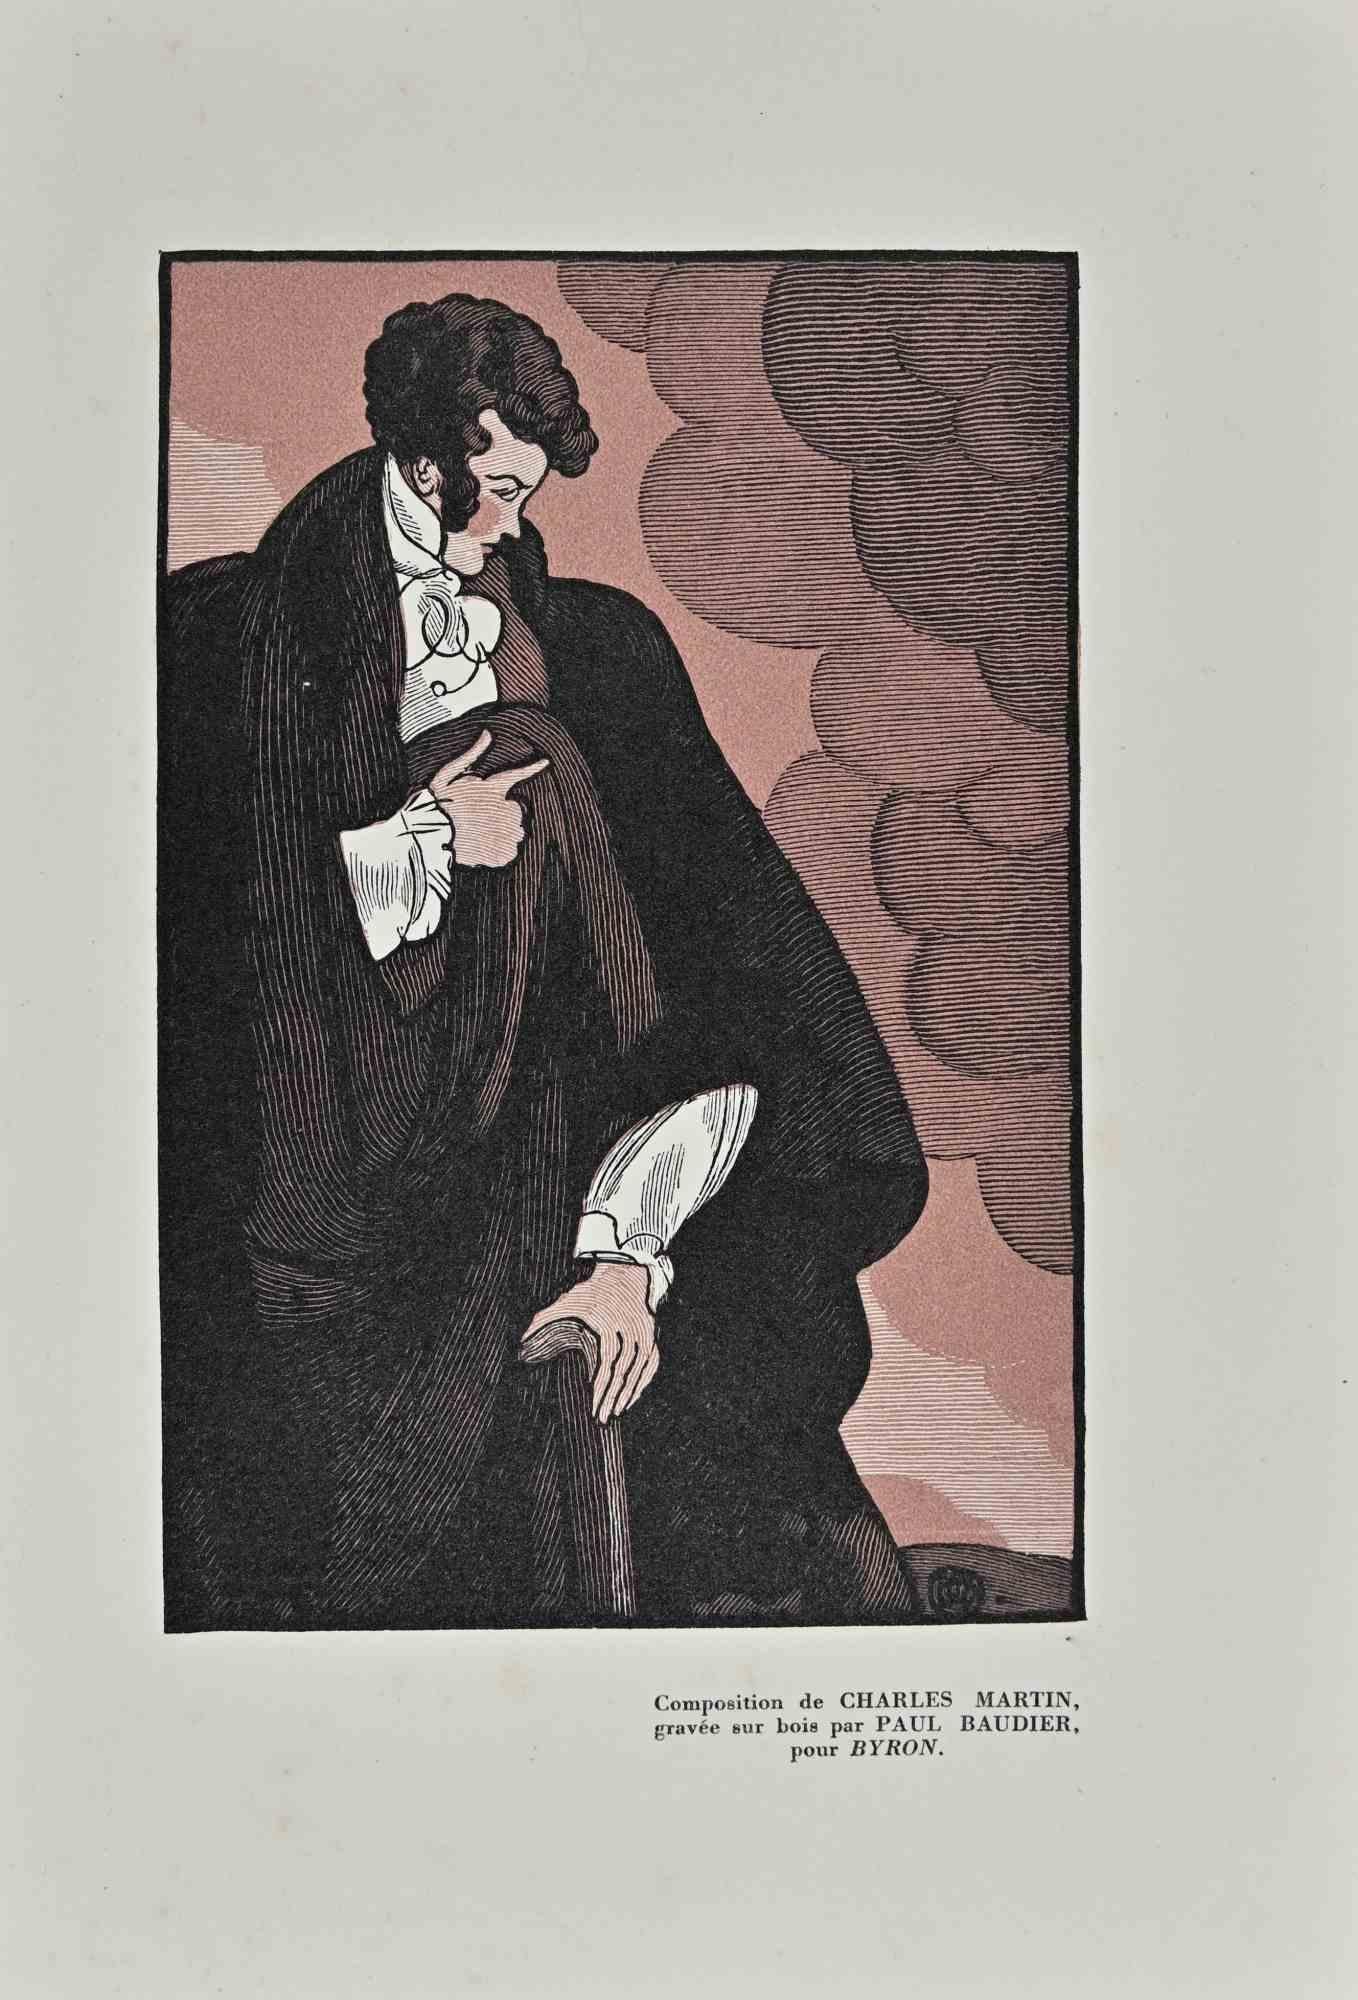 Der Gentleman ist ein Original-Holzschnitt auf elfenbeinfarbenem Papier von Paul Baudier (1881-1962) aus den 1930er Jahren.

Rechts unten Beschreibung in französischer Sprache.

Sehr guter Zustand.

Paul Baudier, (geboren am 18. Oktober 1881 in